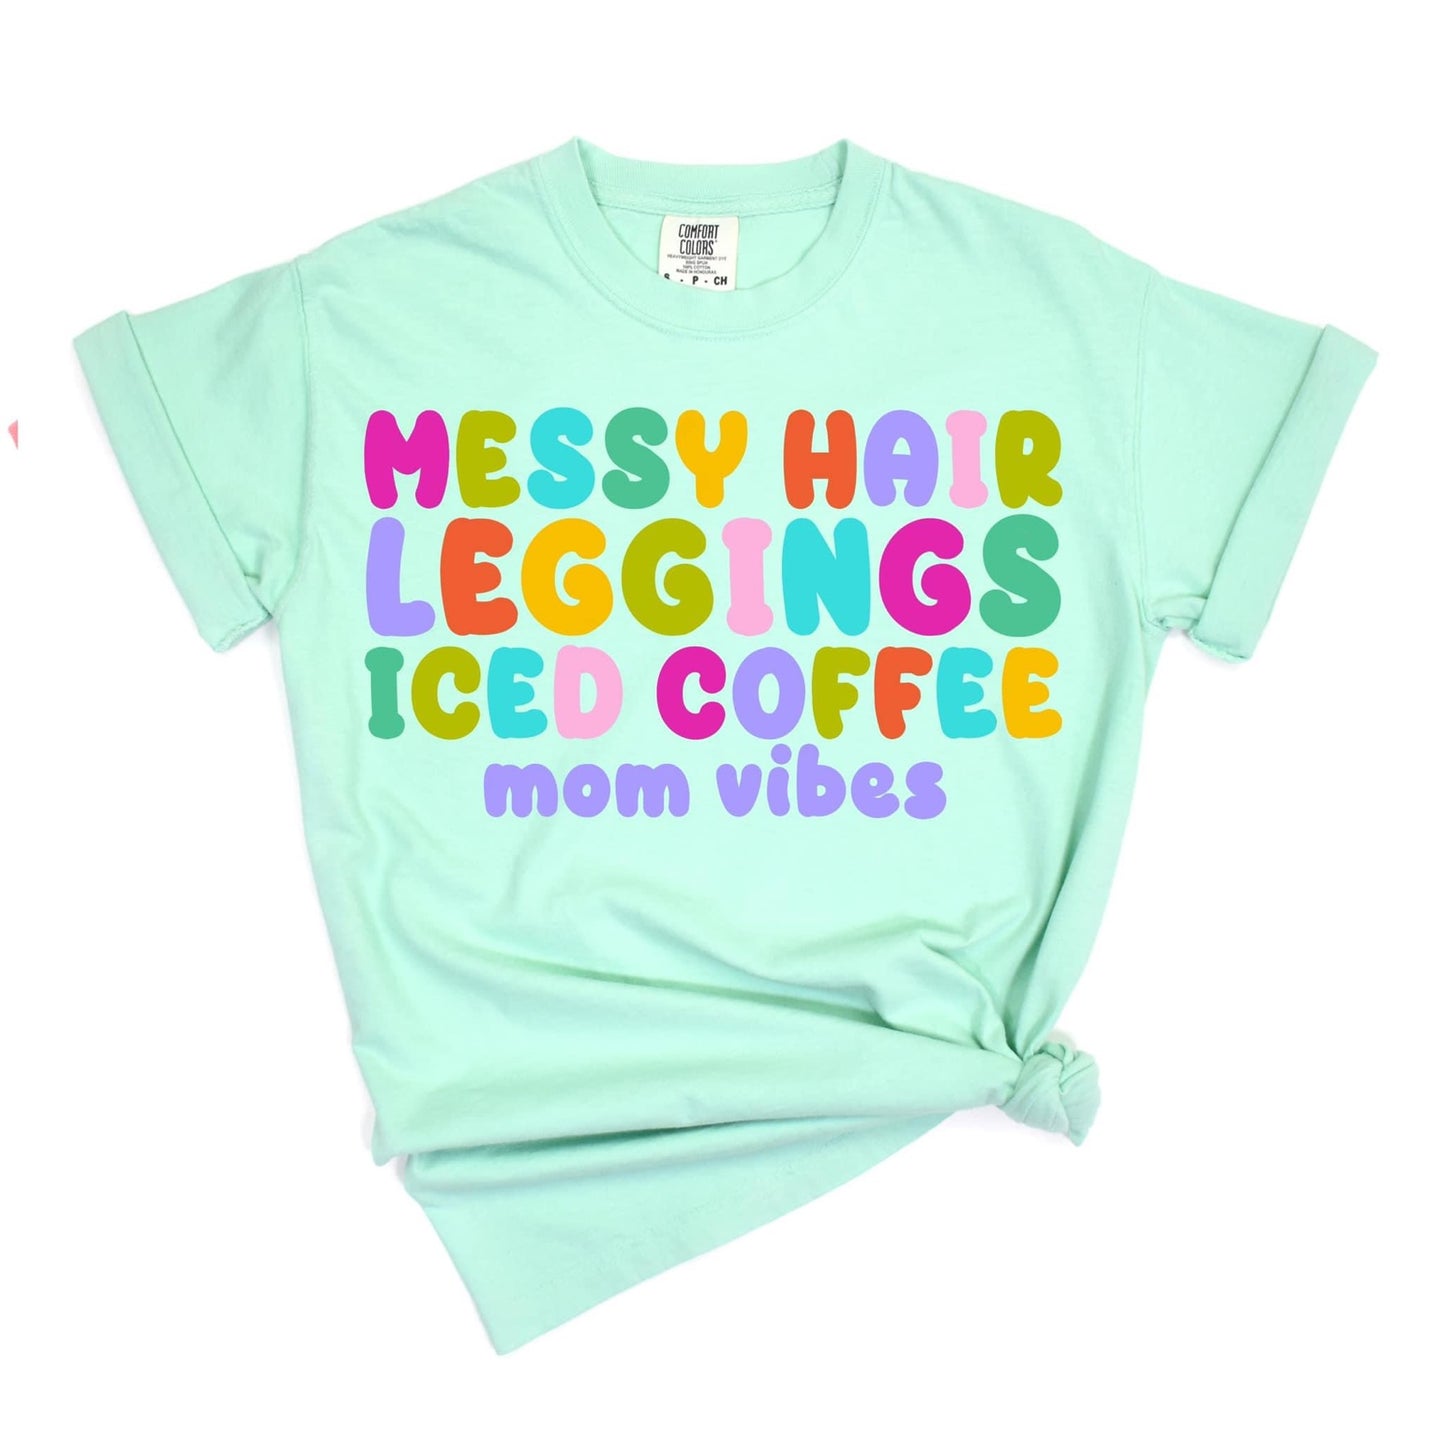 Mom Vibes - Iced Coffee